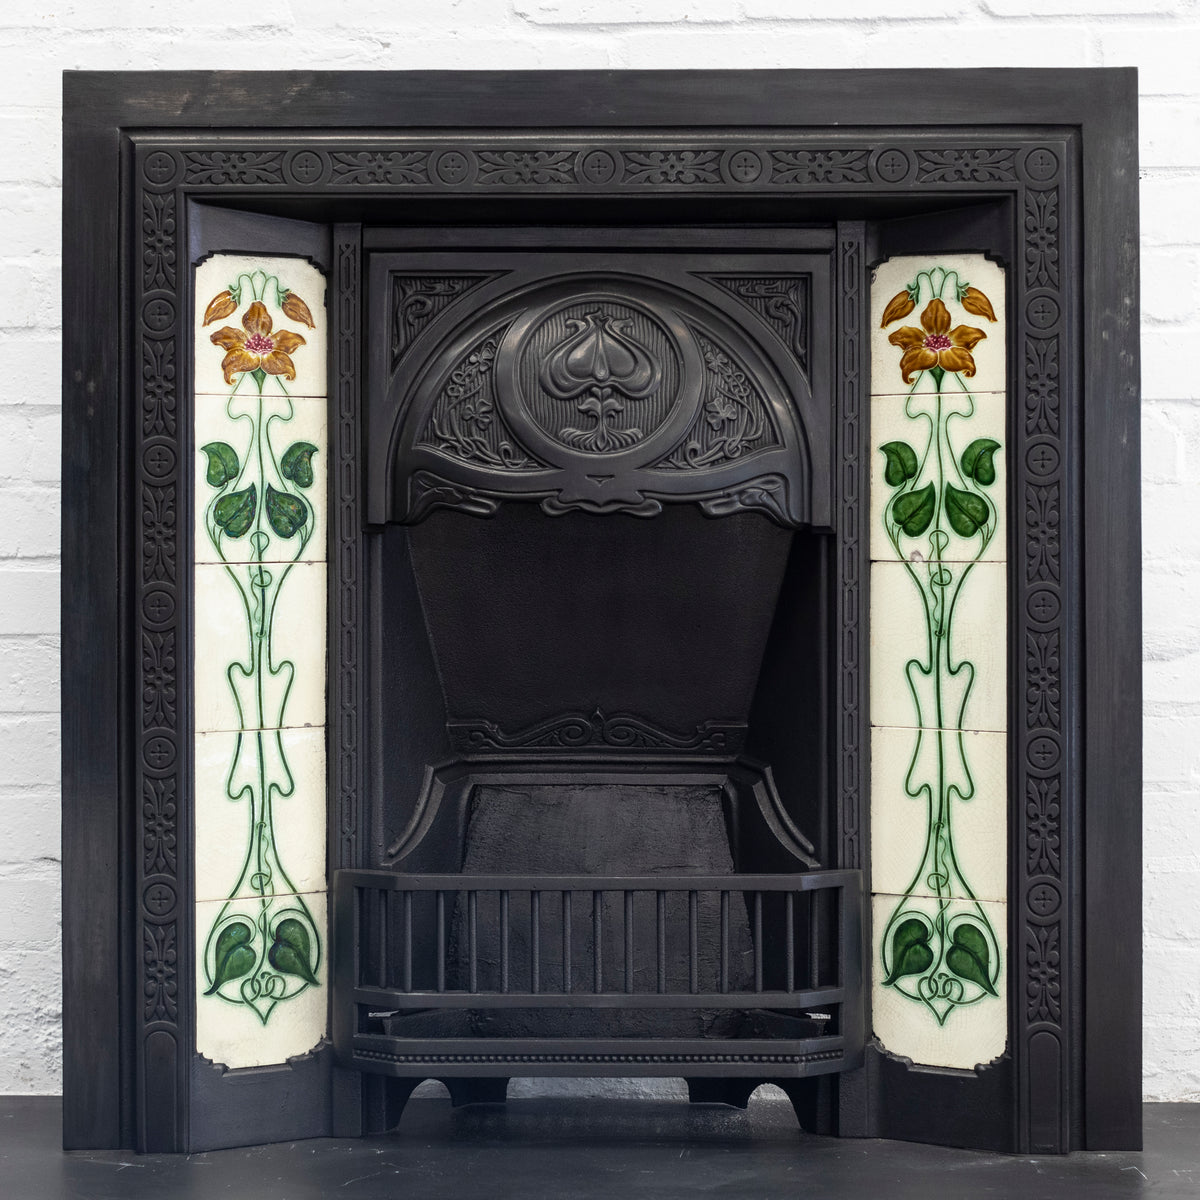 Antique Art Nouveau Cast Iron Fireplace Insert with Tiles | The Architectural Forum